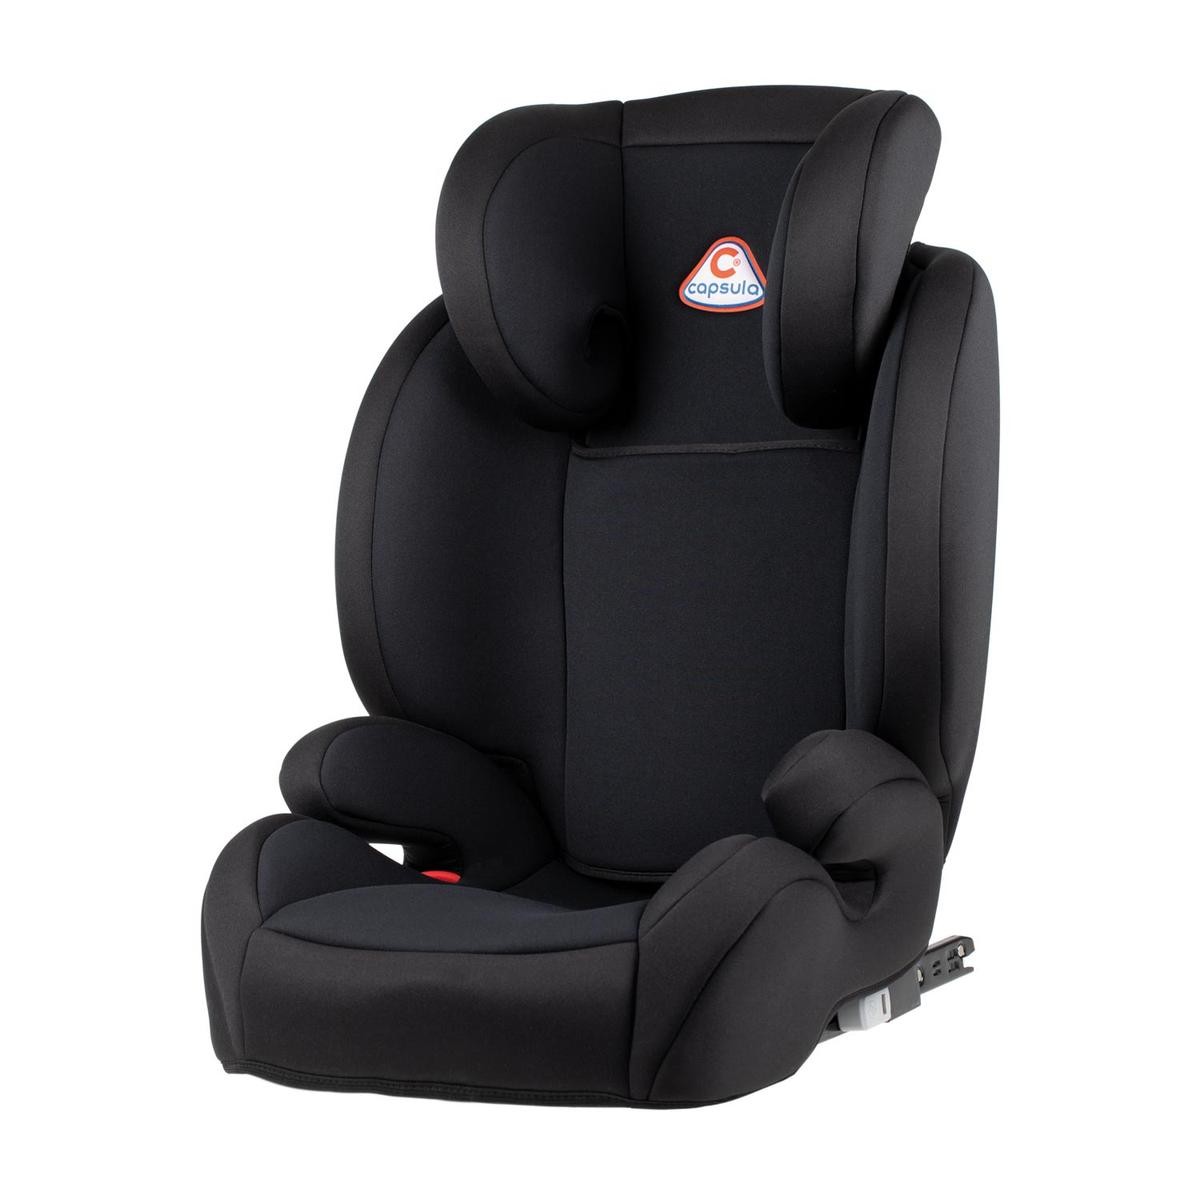 capsula MT5X 772110 Child car seat MERCEDES-BENZ E-Class